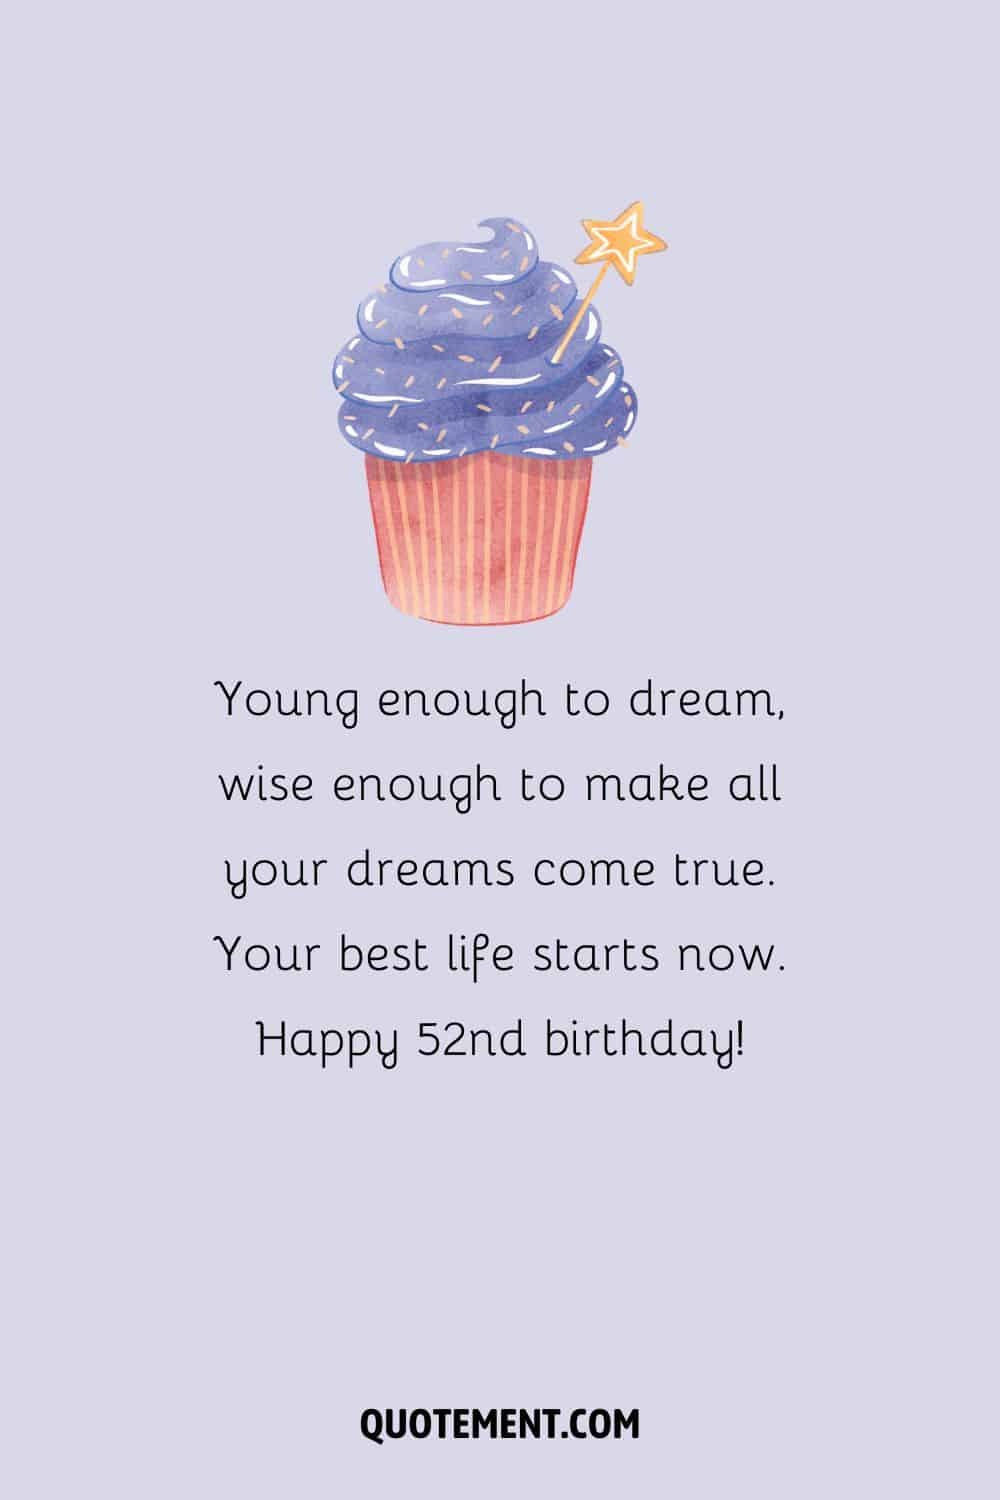 purple birthday cupcake image representing happy 52nd birthday wish
